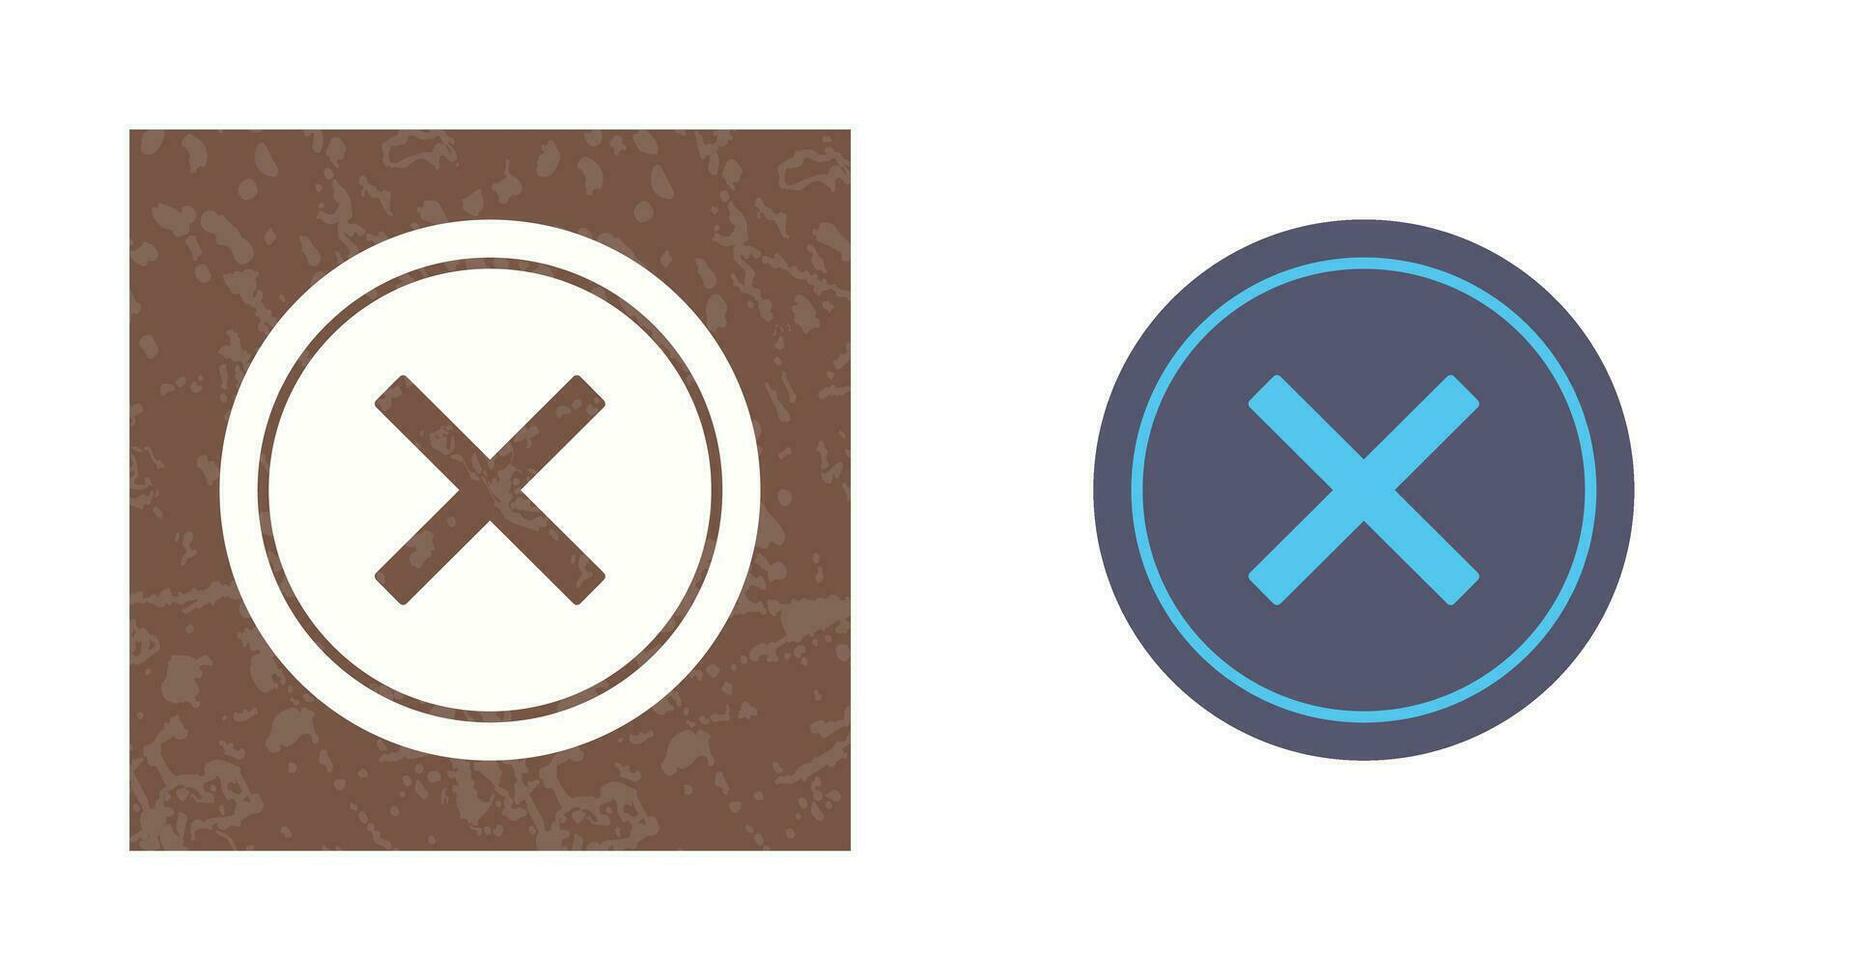 Do Not Cross Vector Icon